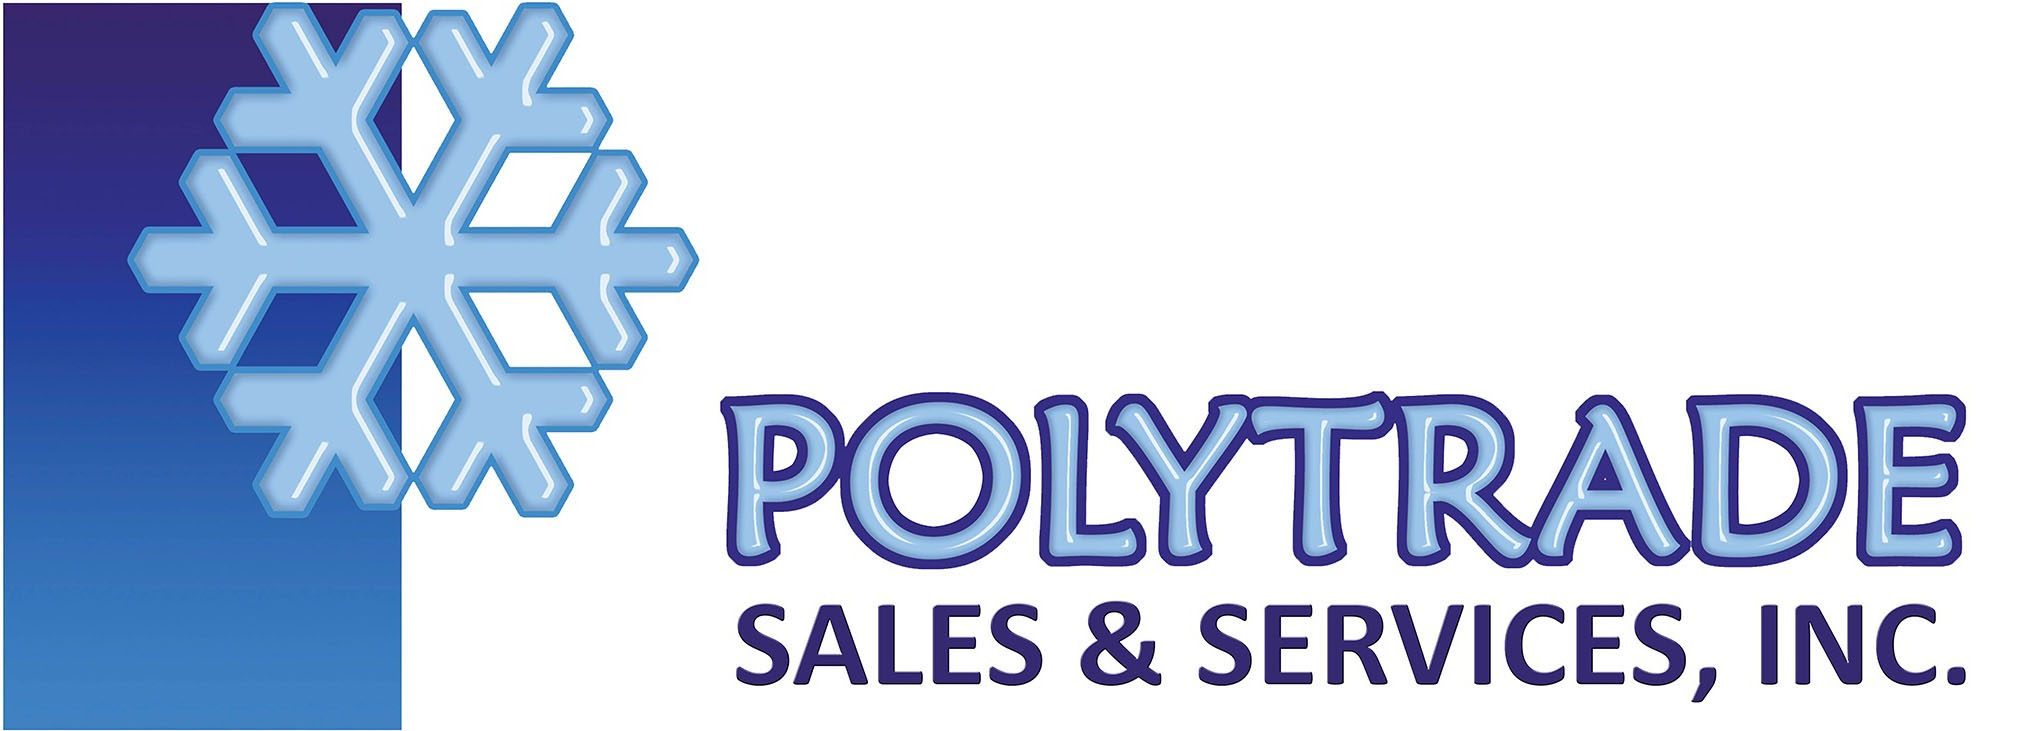 Polytrade Sales & Services, Inc.